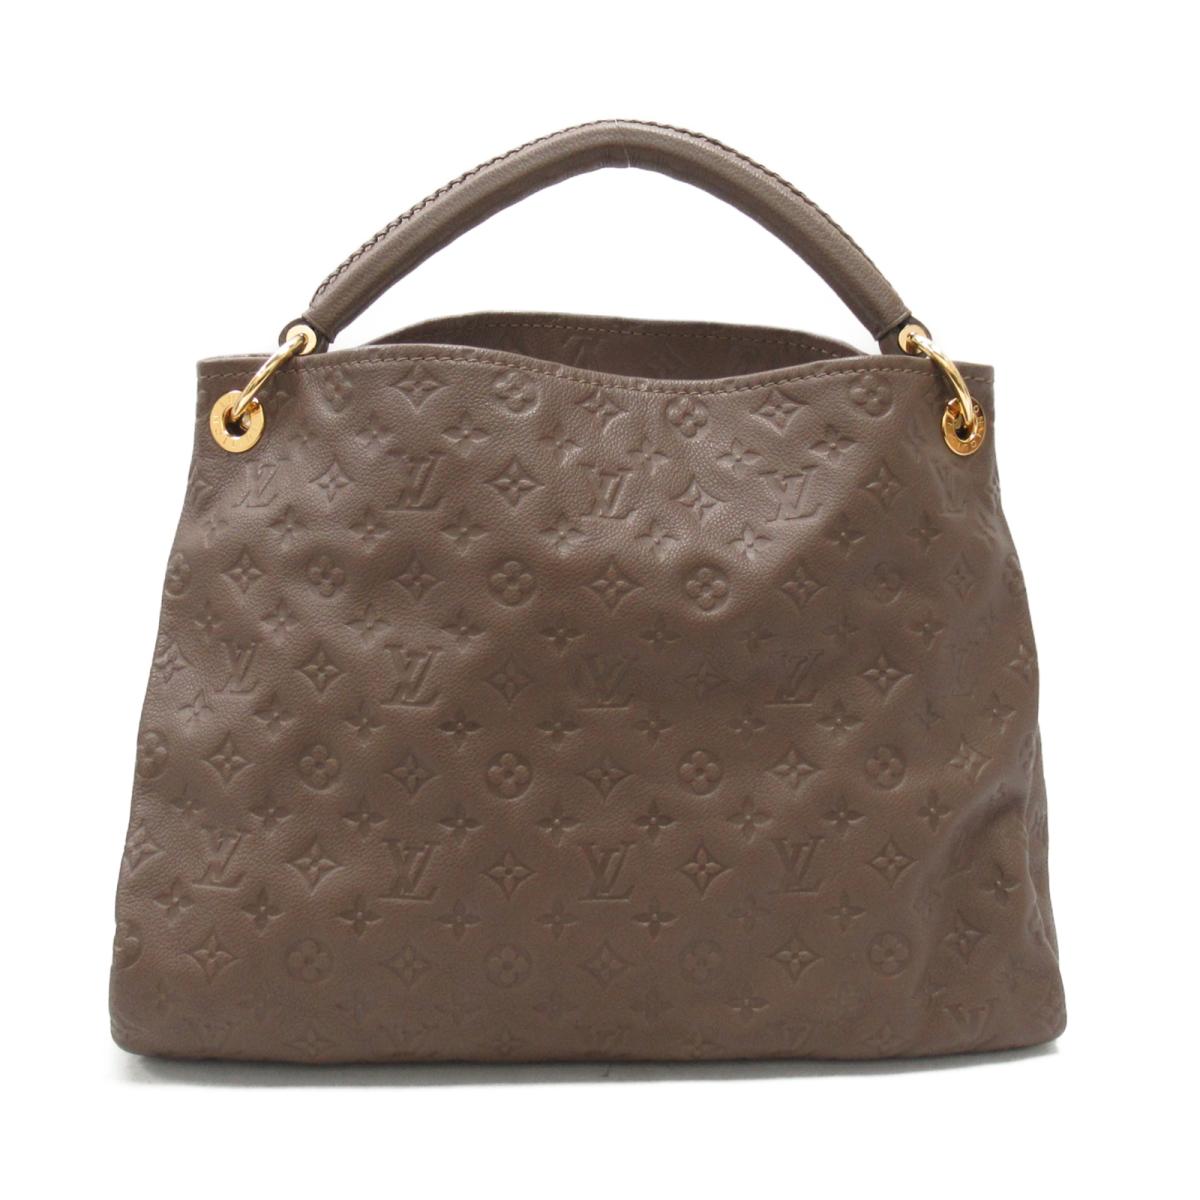 Louis Vuitton Artsy Mm Handbag | Handbag Reviews 2020